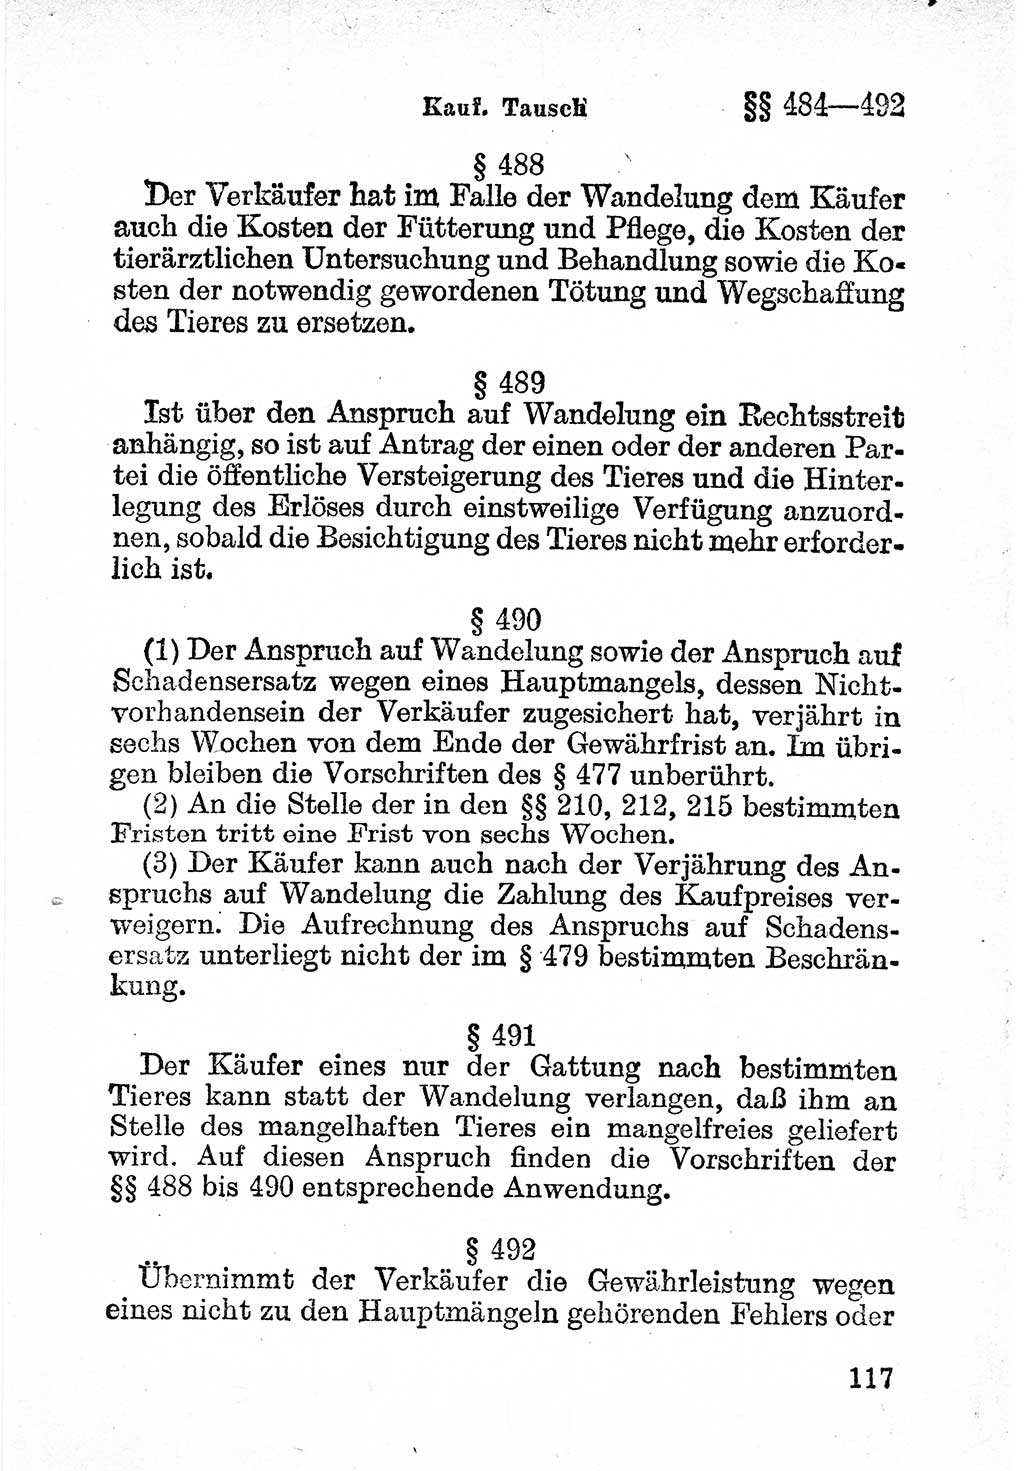 Bürgerliches Gesetzbuch (BGB) nebst wichtigen Nebengesetzen [Deutsche Demokratische Republik (DDR)] 1956, Seite 117 (BGB Nebenges. DDR 1956, S. 117)